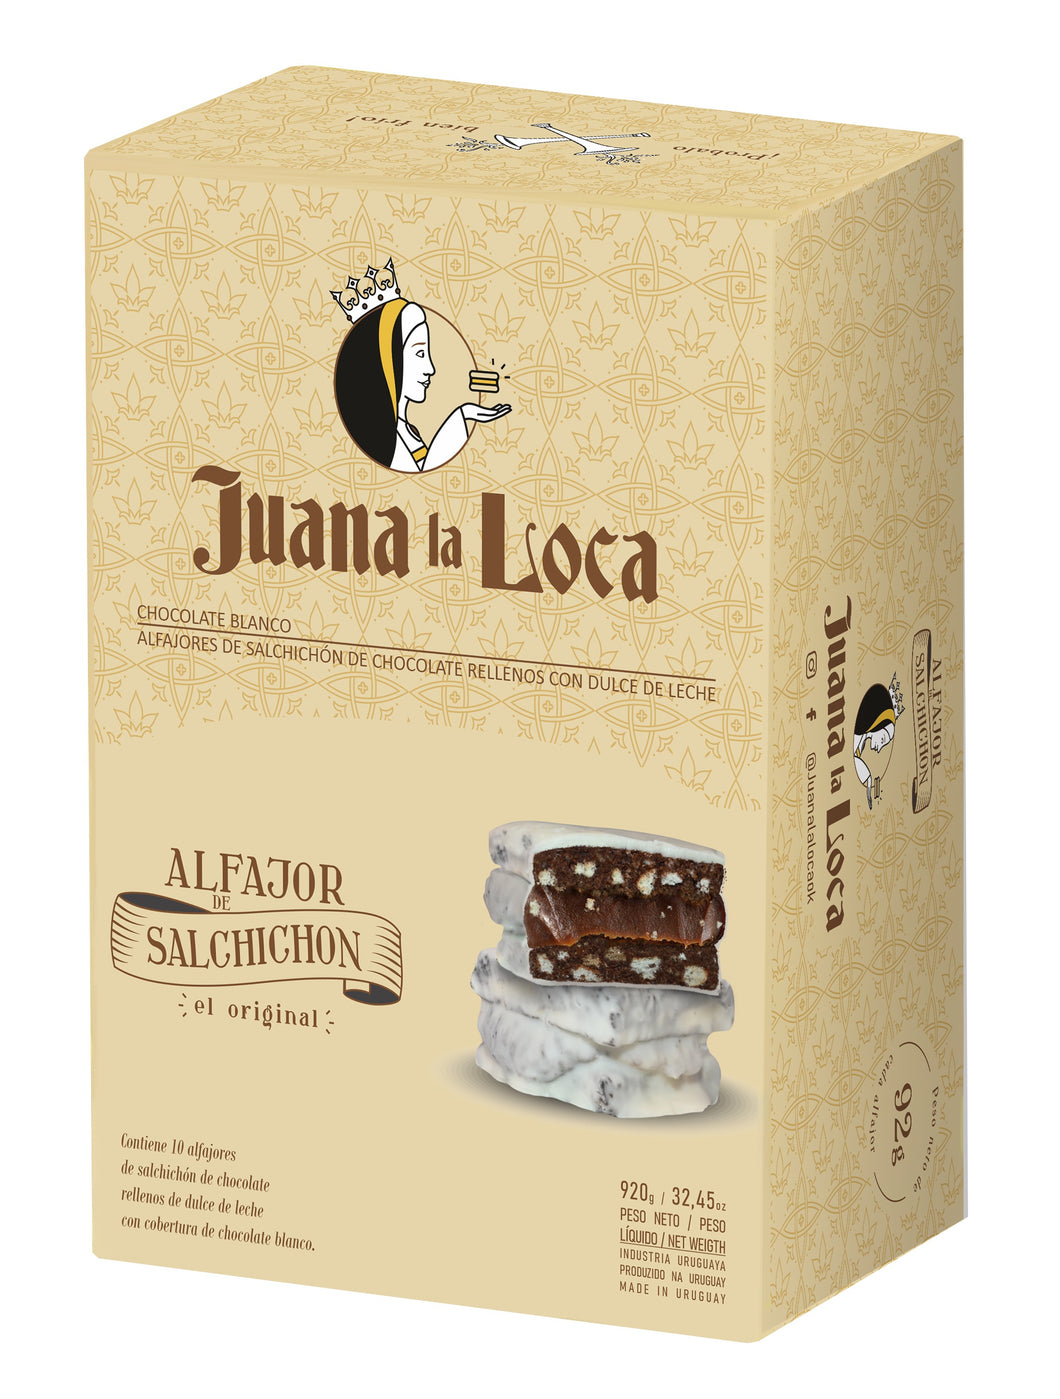 JUANA LA LOCA - Alfajor de salchichón bañado de chocolate blanco X10 unidades - 920g